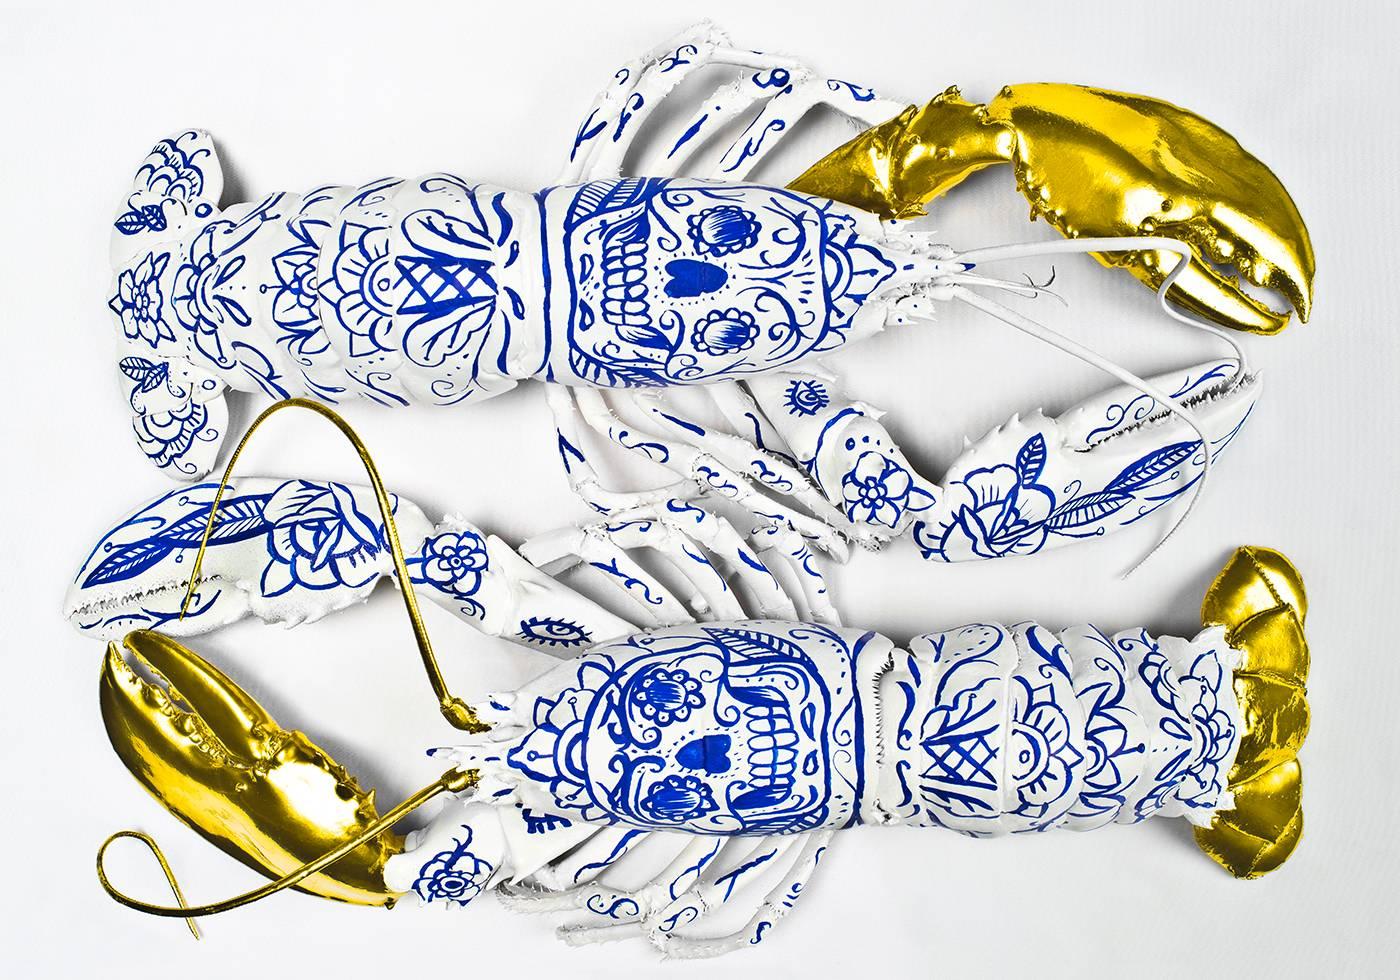 Porcelain Lobsters - Photograph by Clara Hallencreutz